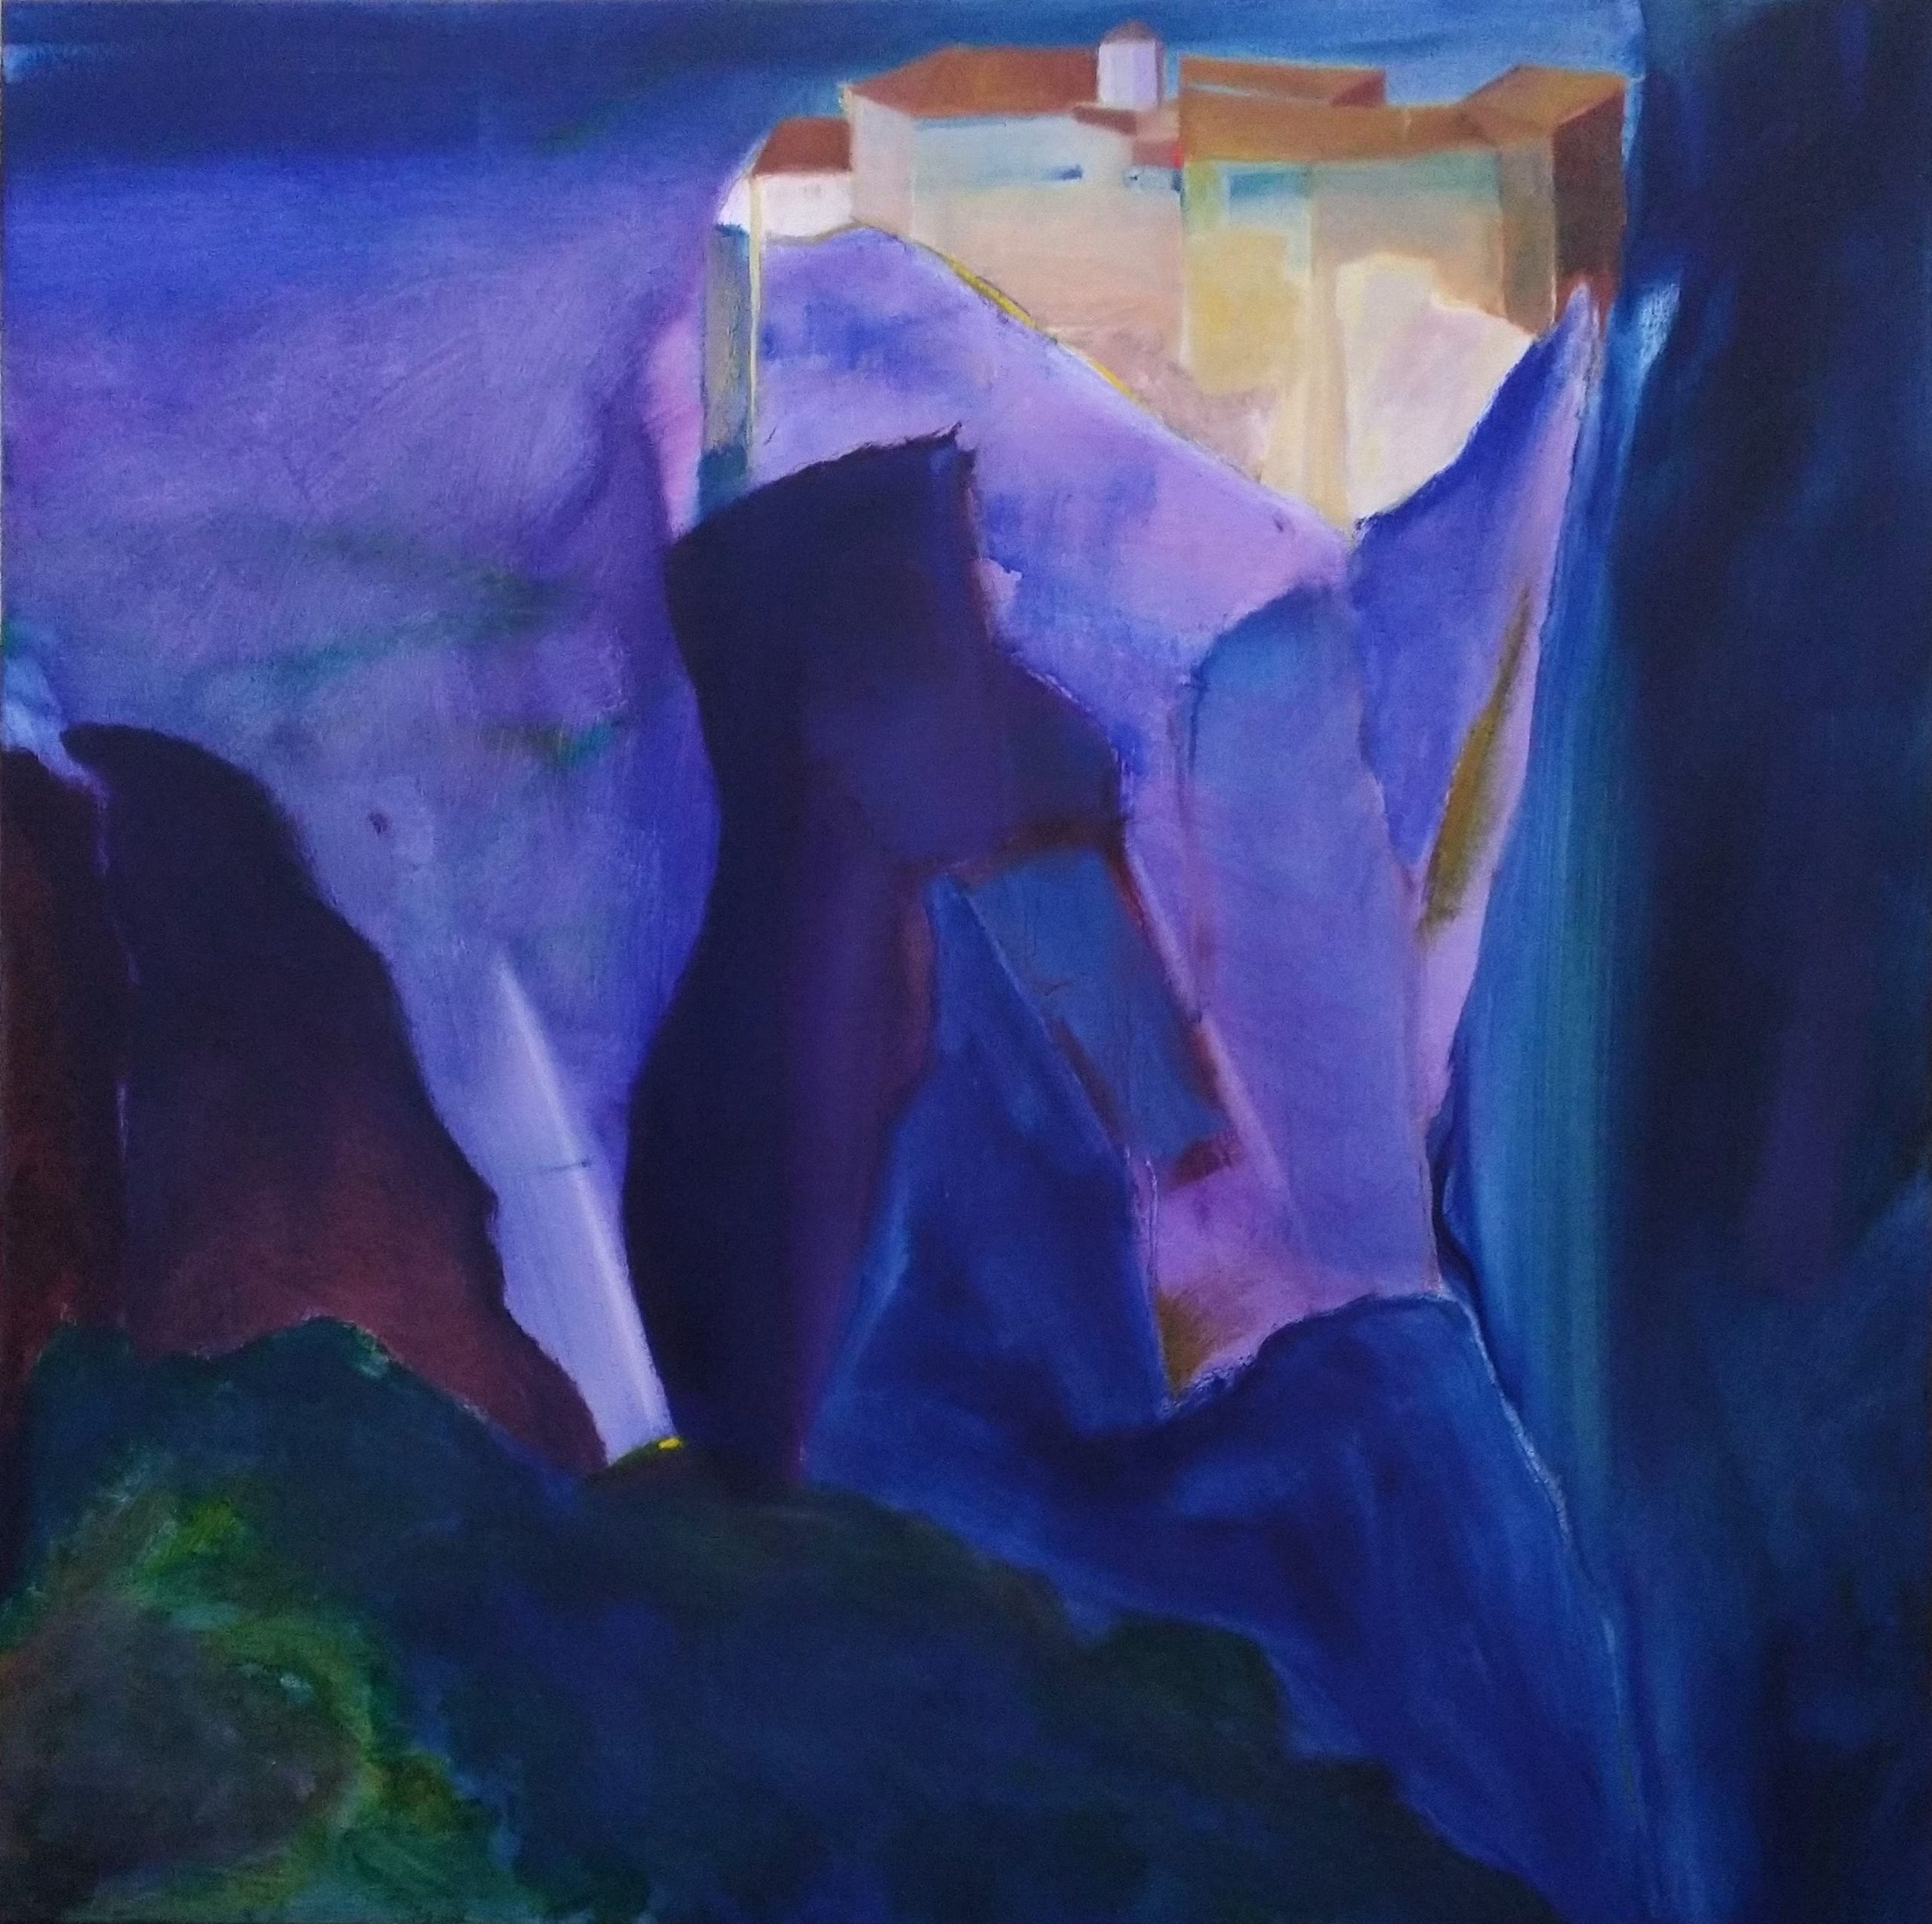 Μετέωρα Ανέσπερο φως: Έκθεση του Σταύρου Κοτσιρέα στο Μουσείο Τσιτσάνη στα Τρίκαλα